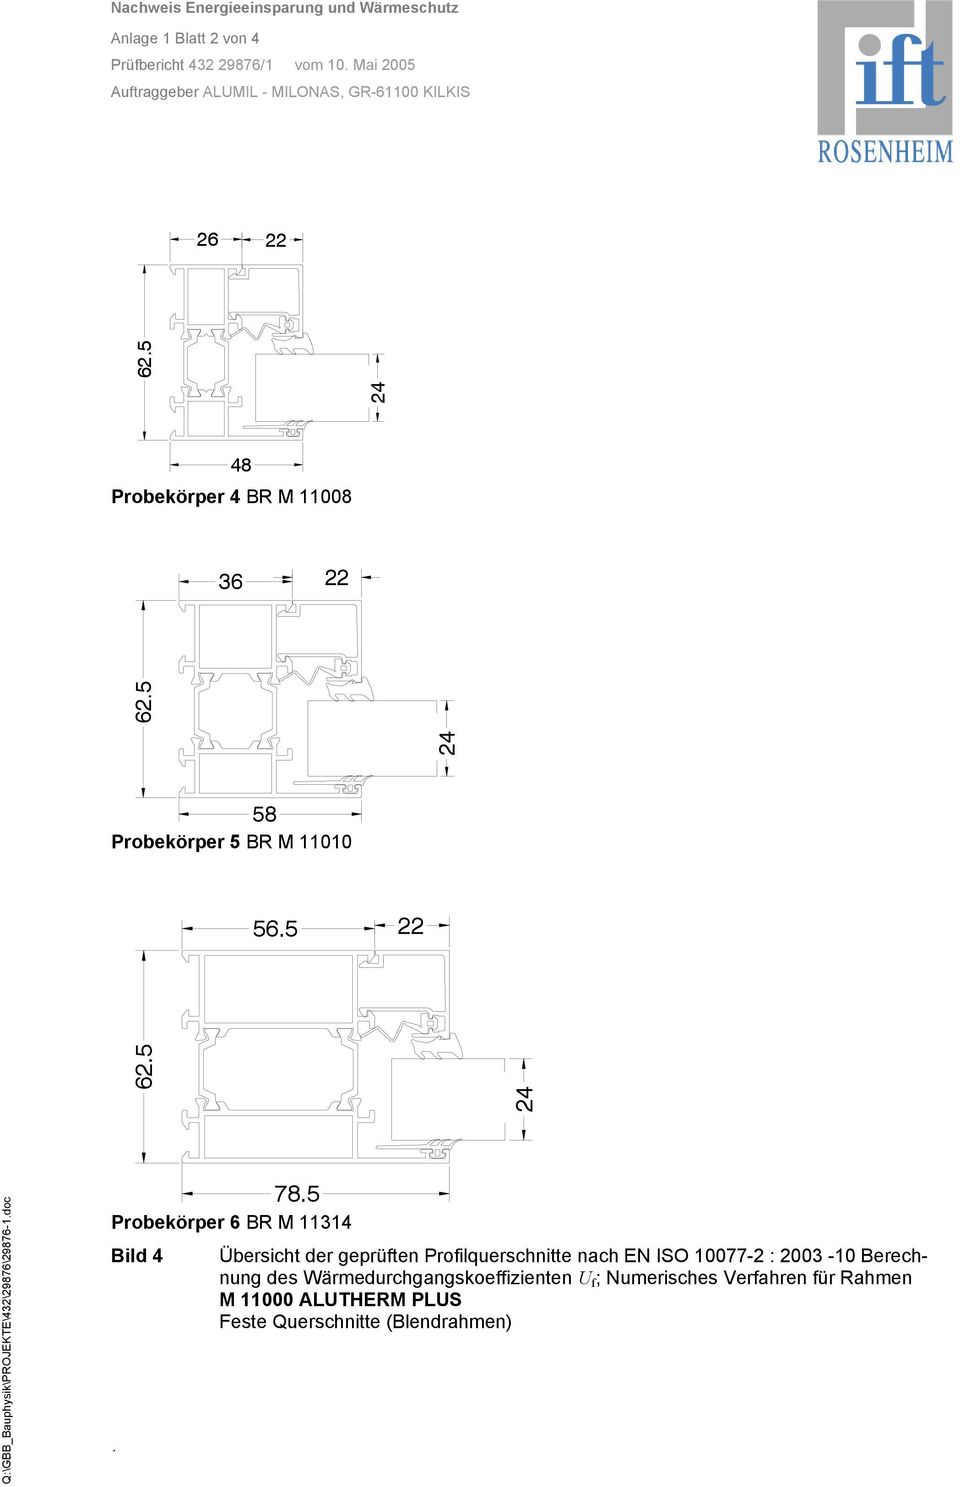 5 Probekörper 6 BR M 11314 Bild 4 Übersicht der geprüften Profilquerschnitte nach EN ISO